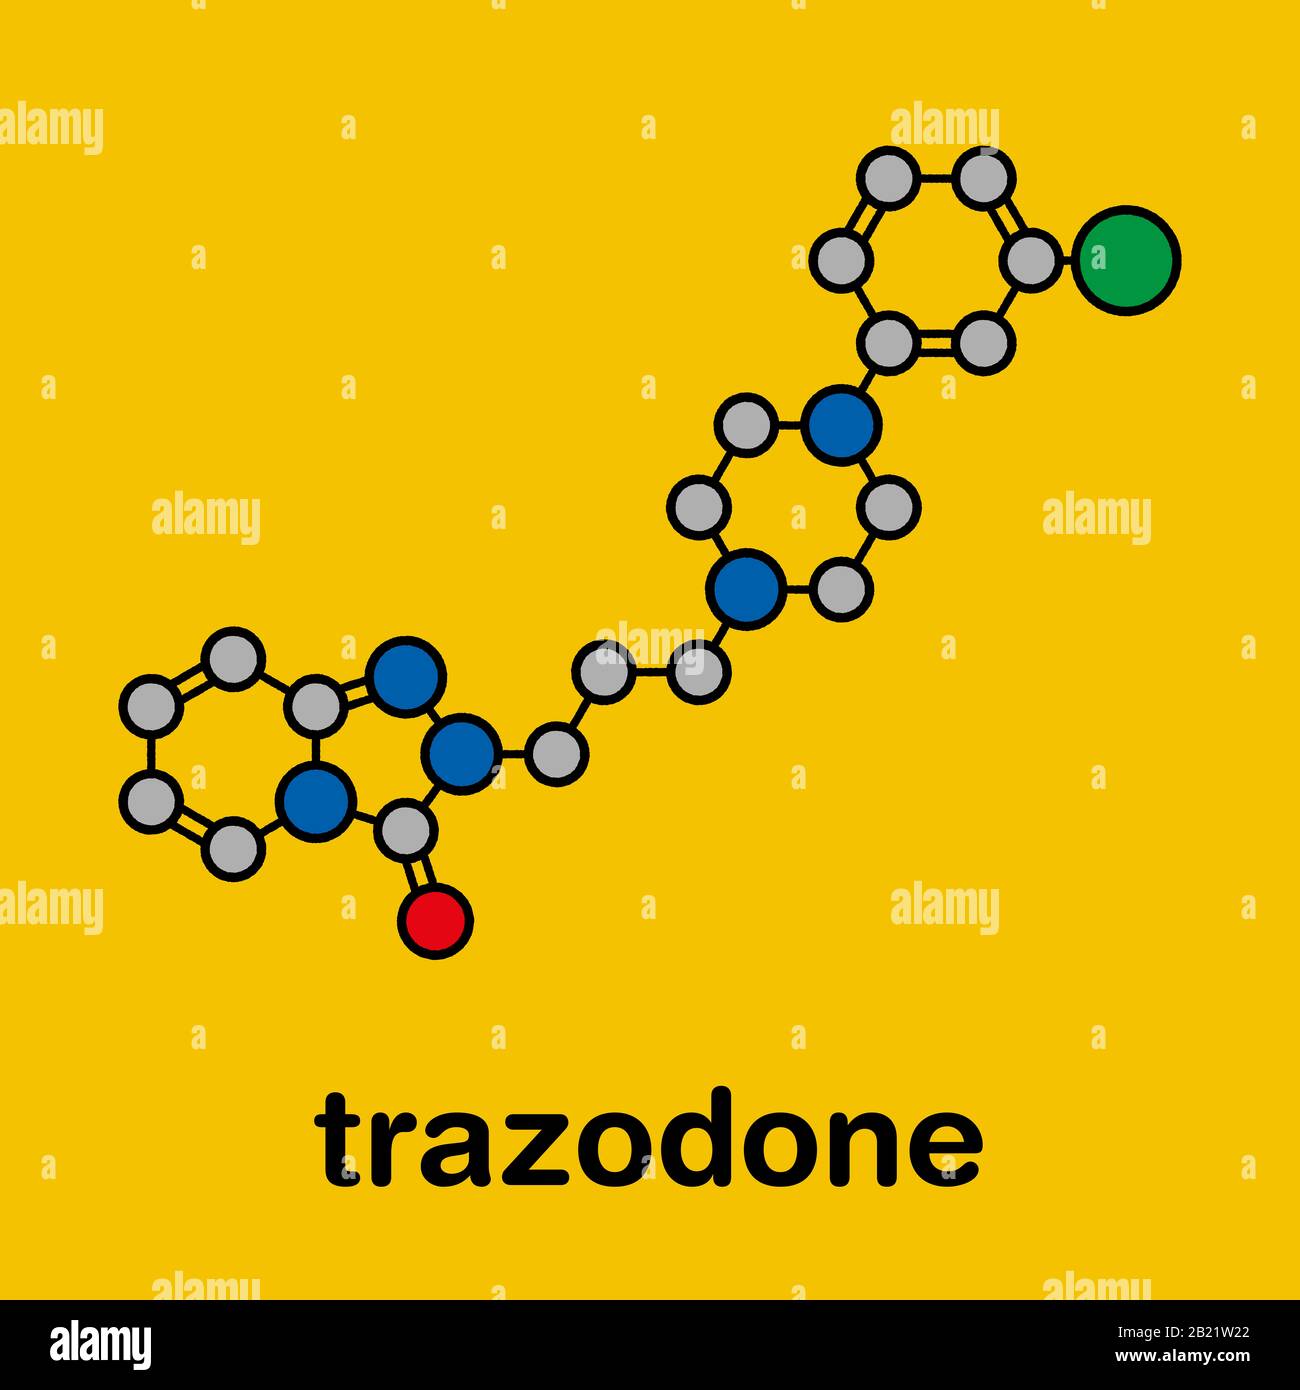 Trazodona Antidepresivo Y Ansiolítico Ilustración Fotografía De Stock Alamy